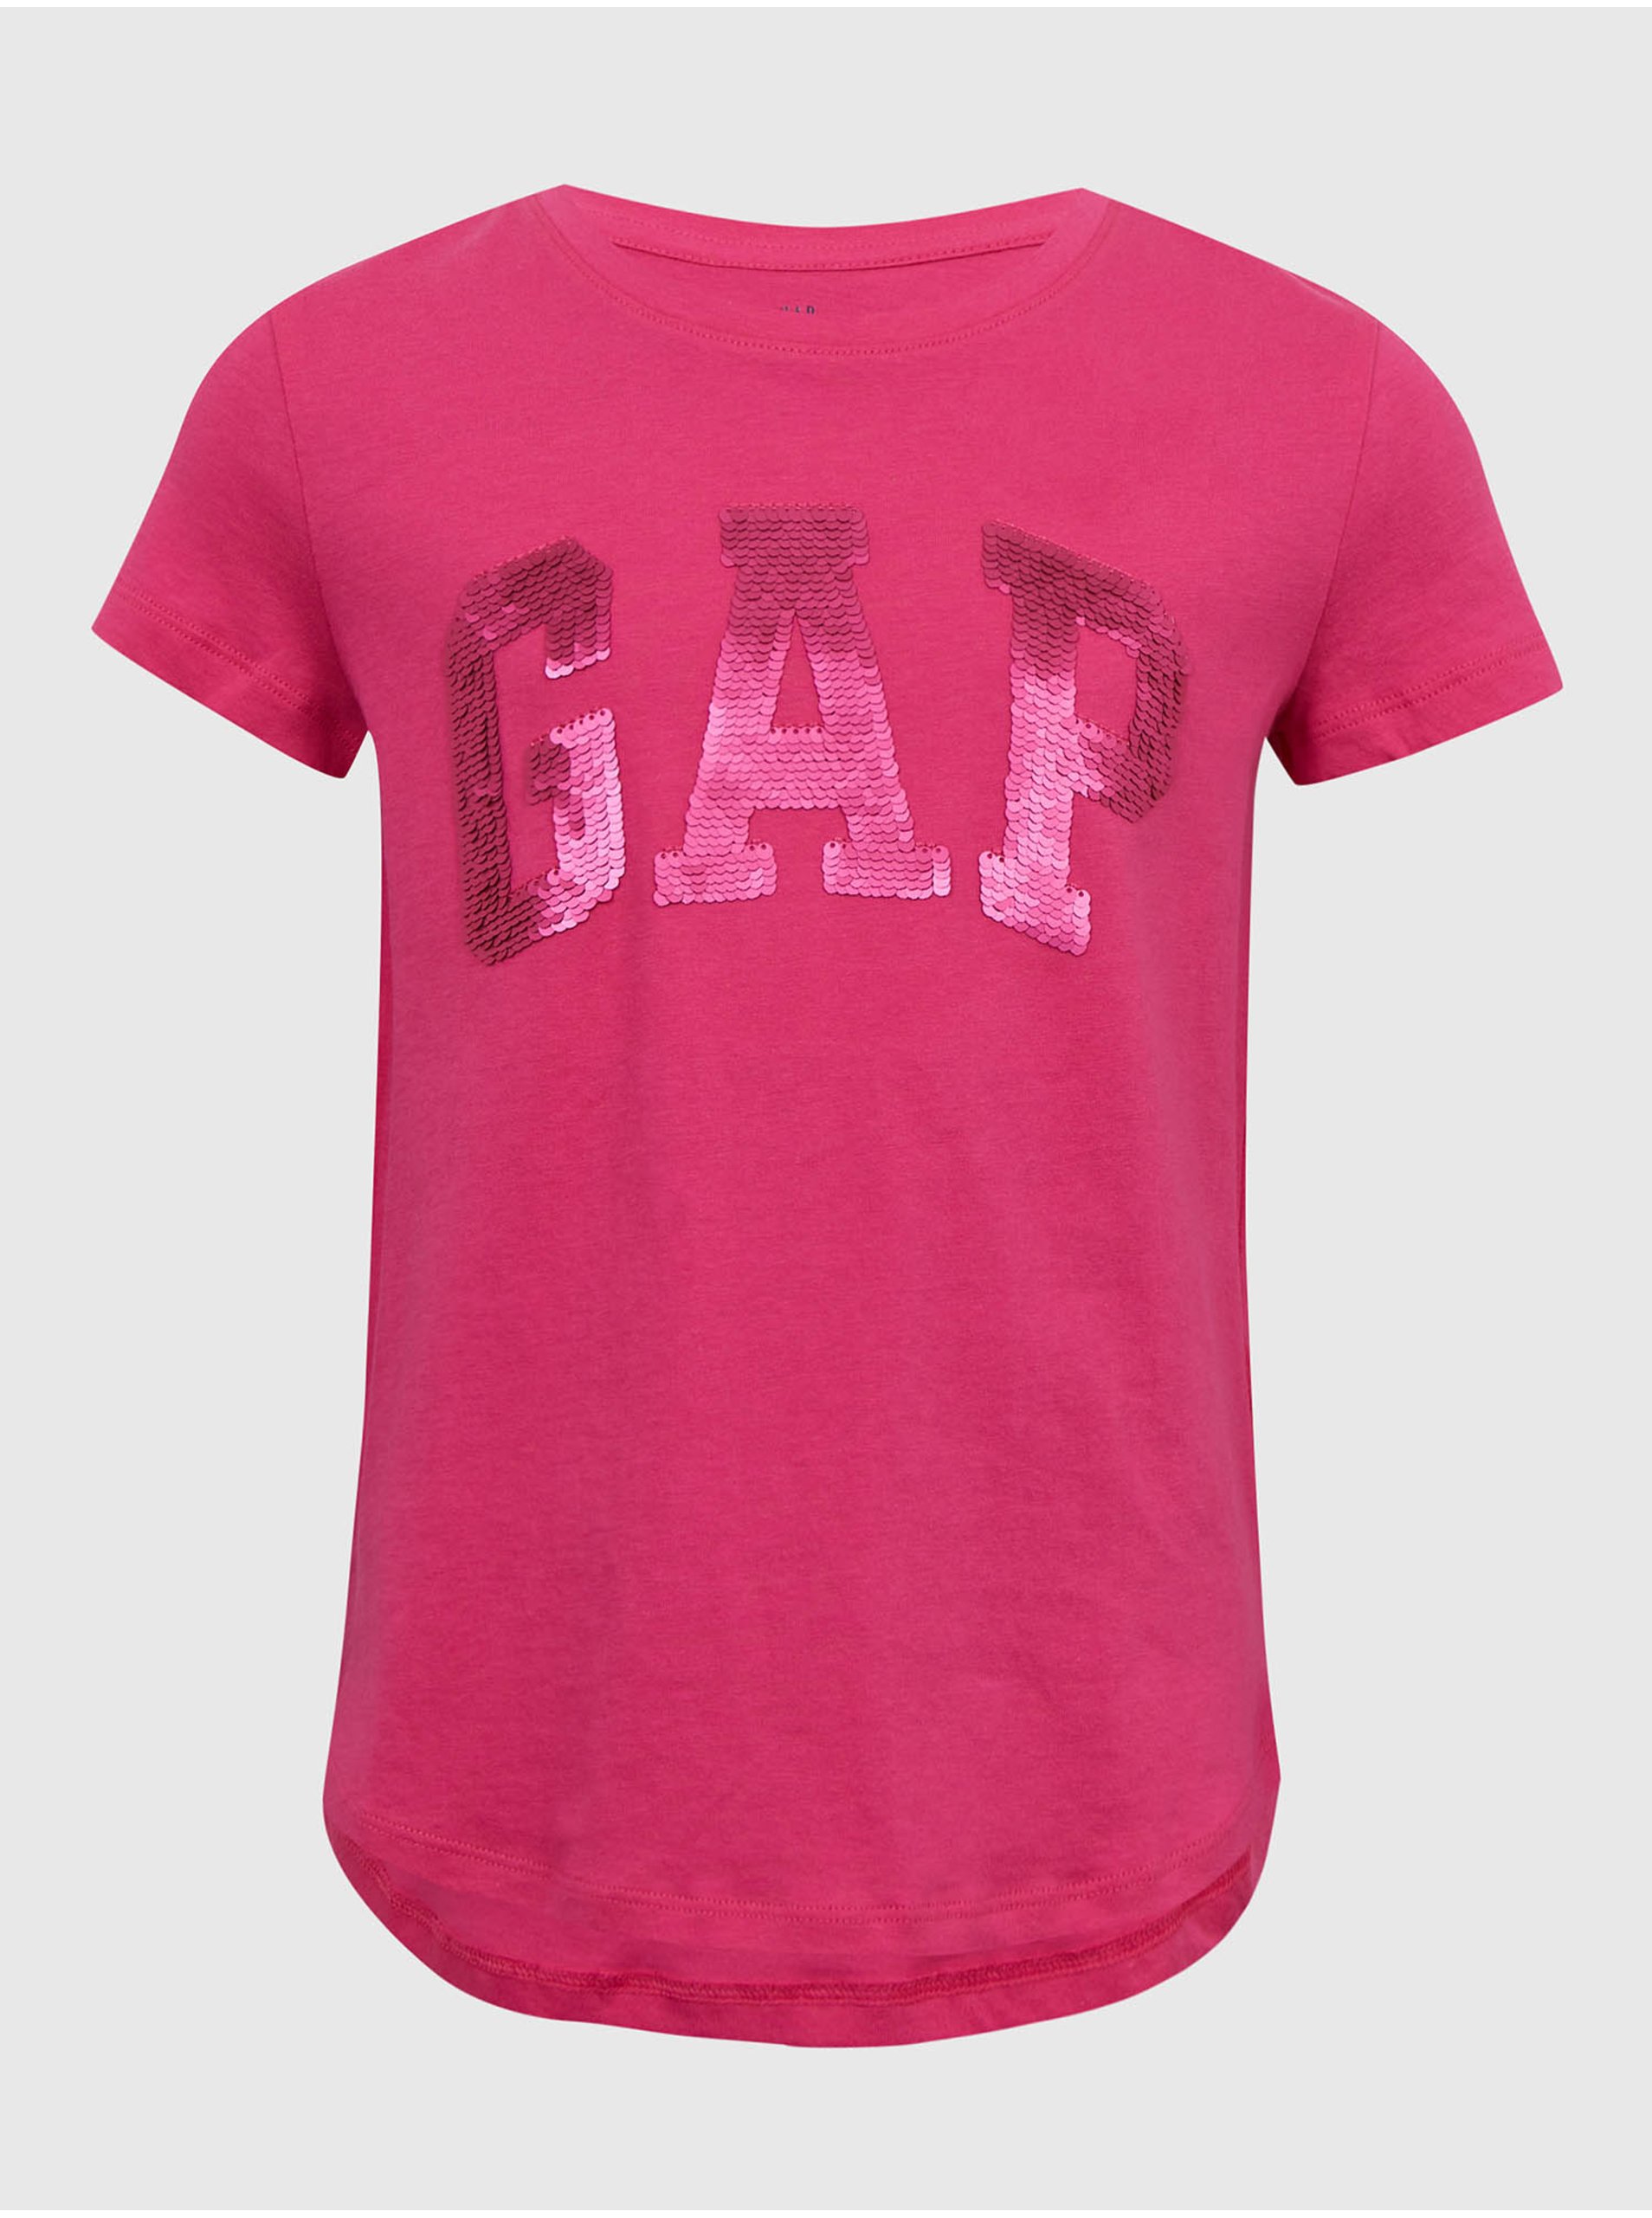 E-shop Tmavoružové dievčenské bavlnené tričko s logom GAP